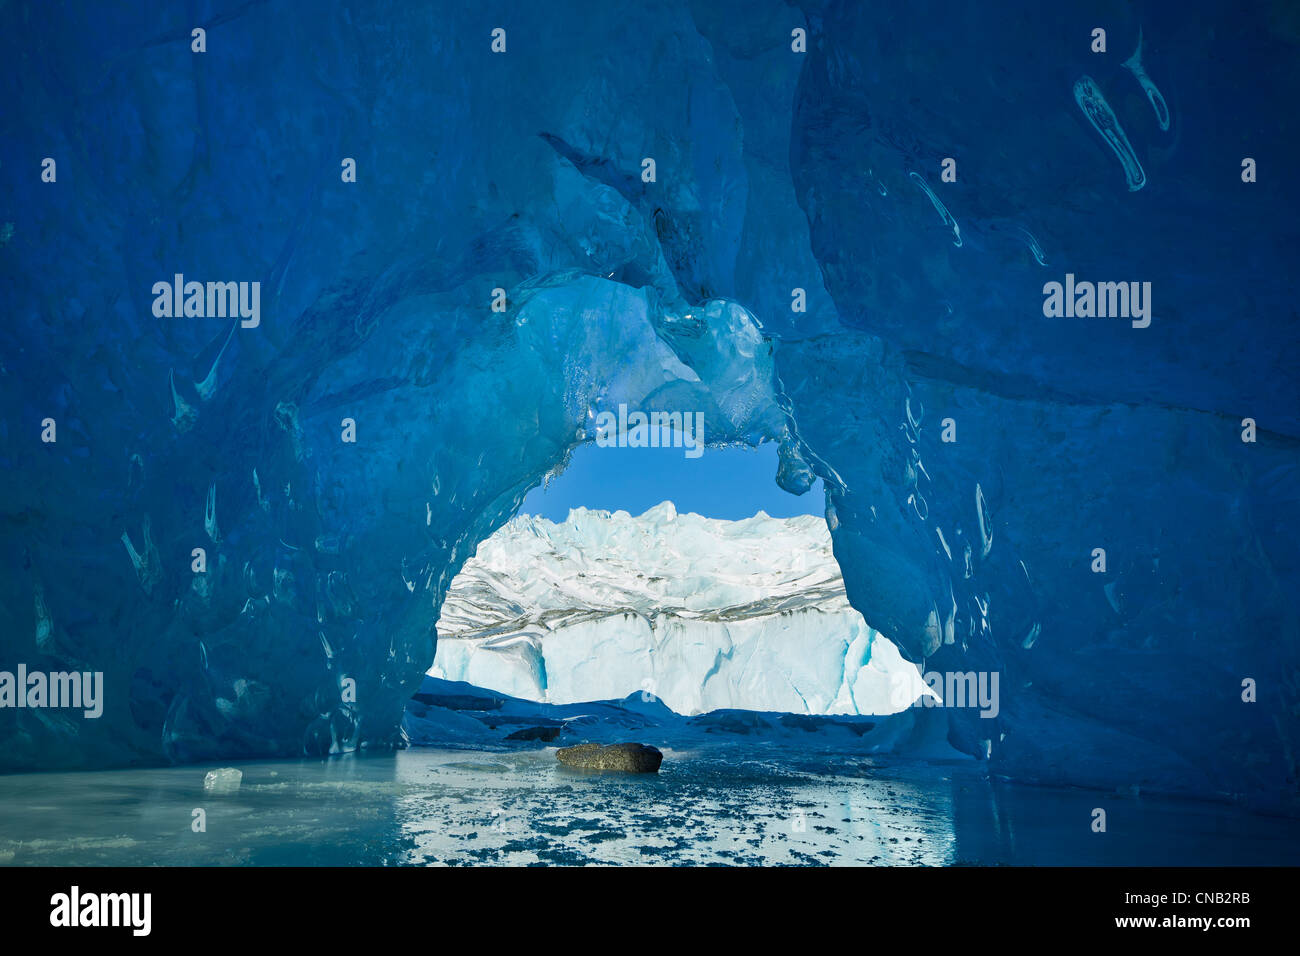 Vue depuis l'intérieur d'une grotte de glace d'un iceberg dans le lac gelé de Mendenhall, Juneau, Alaska du Sud-Est, l'hiver Banque D'Images